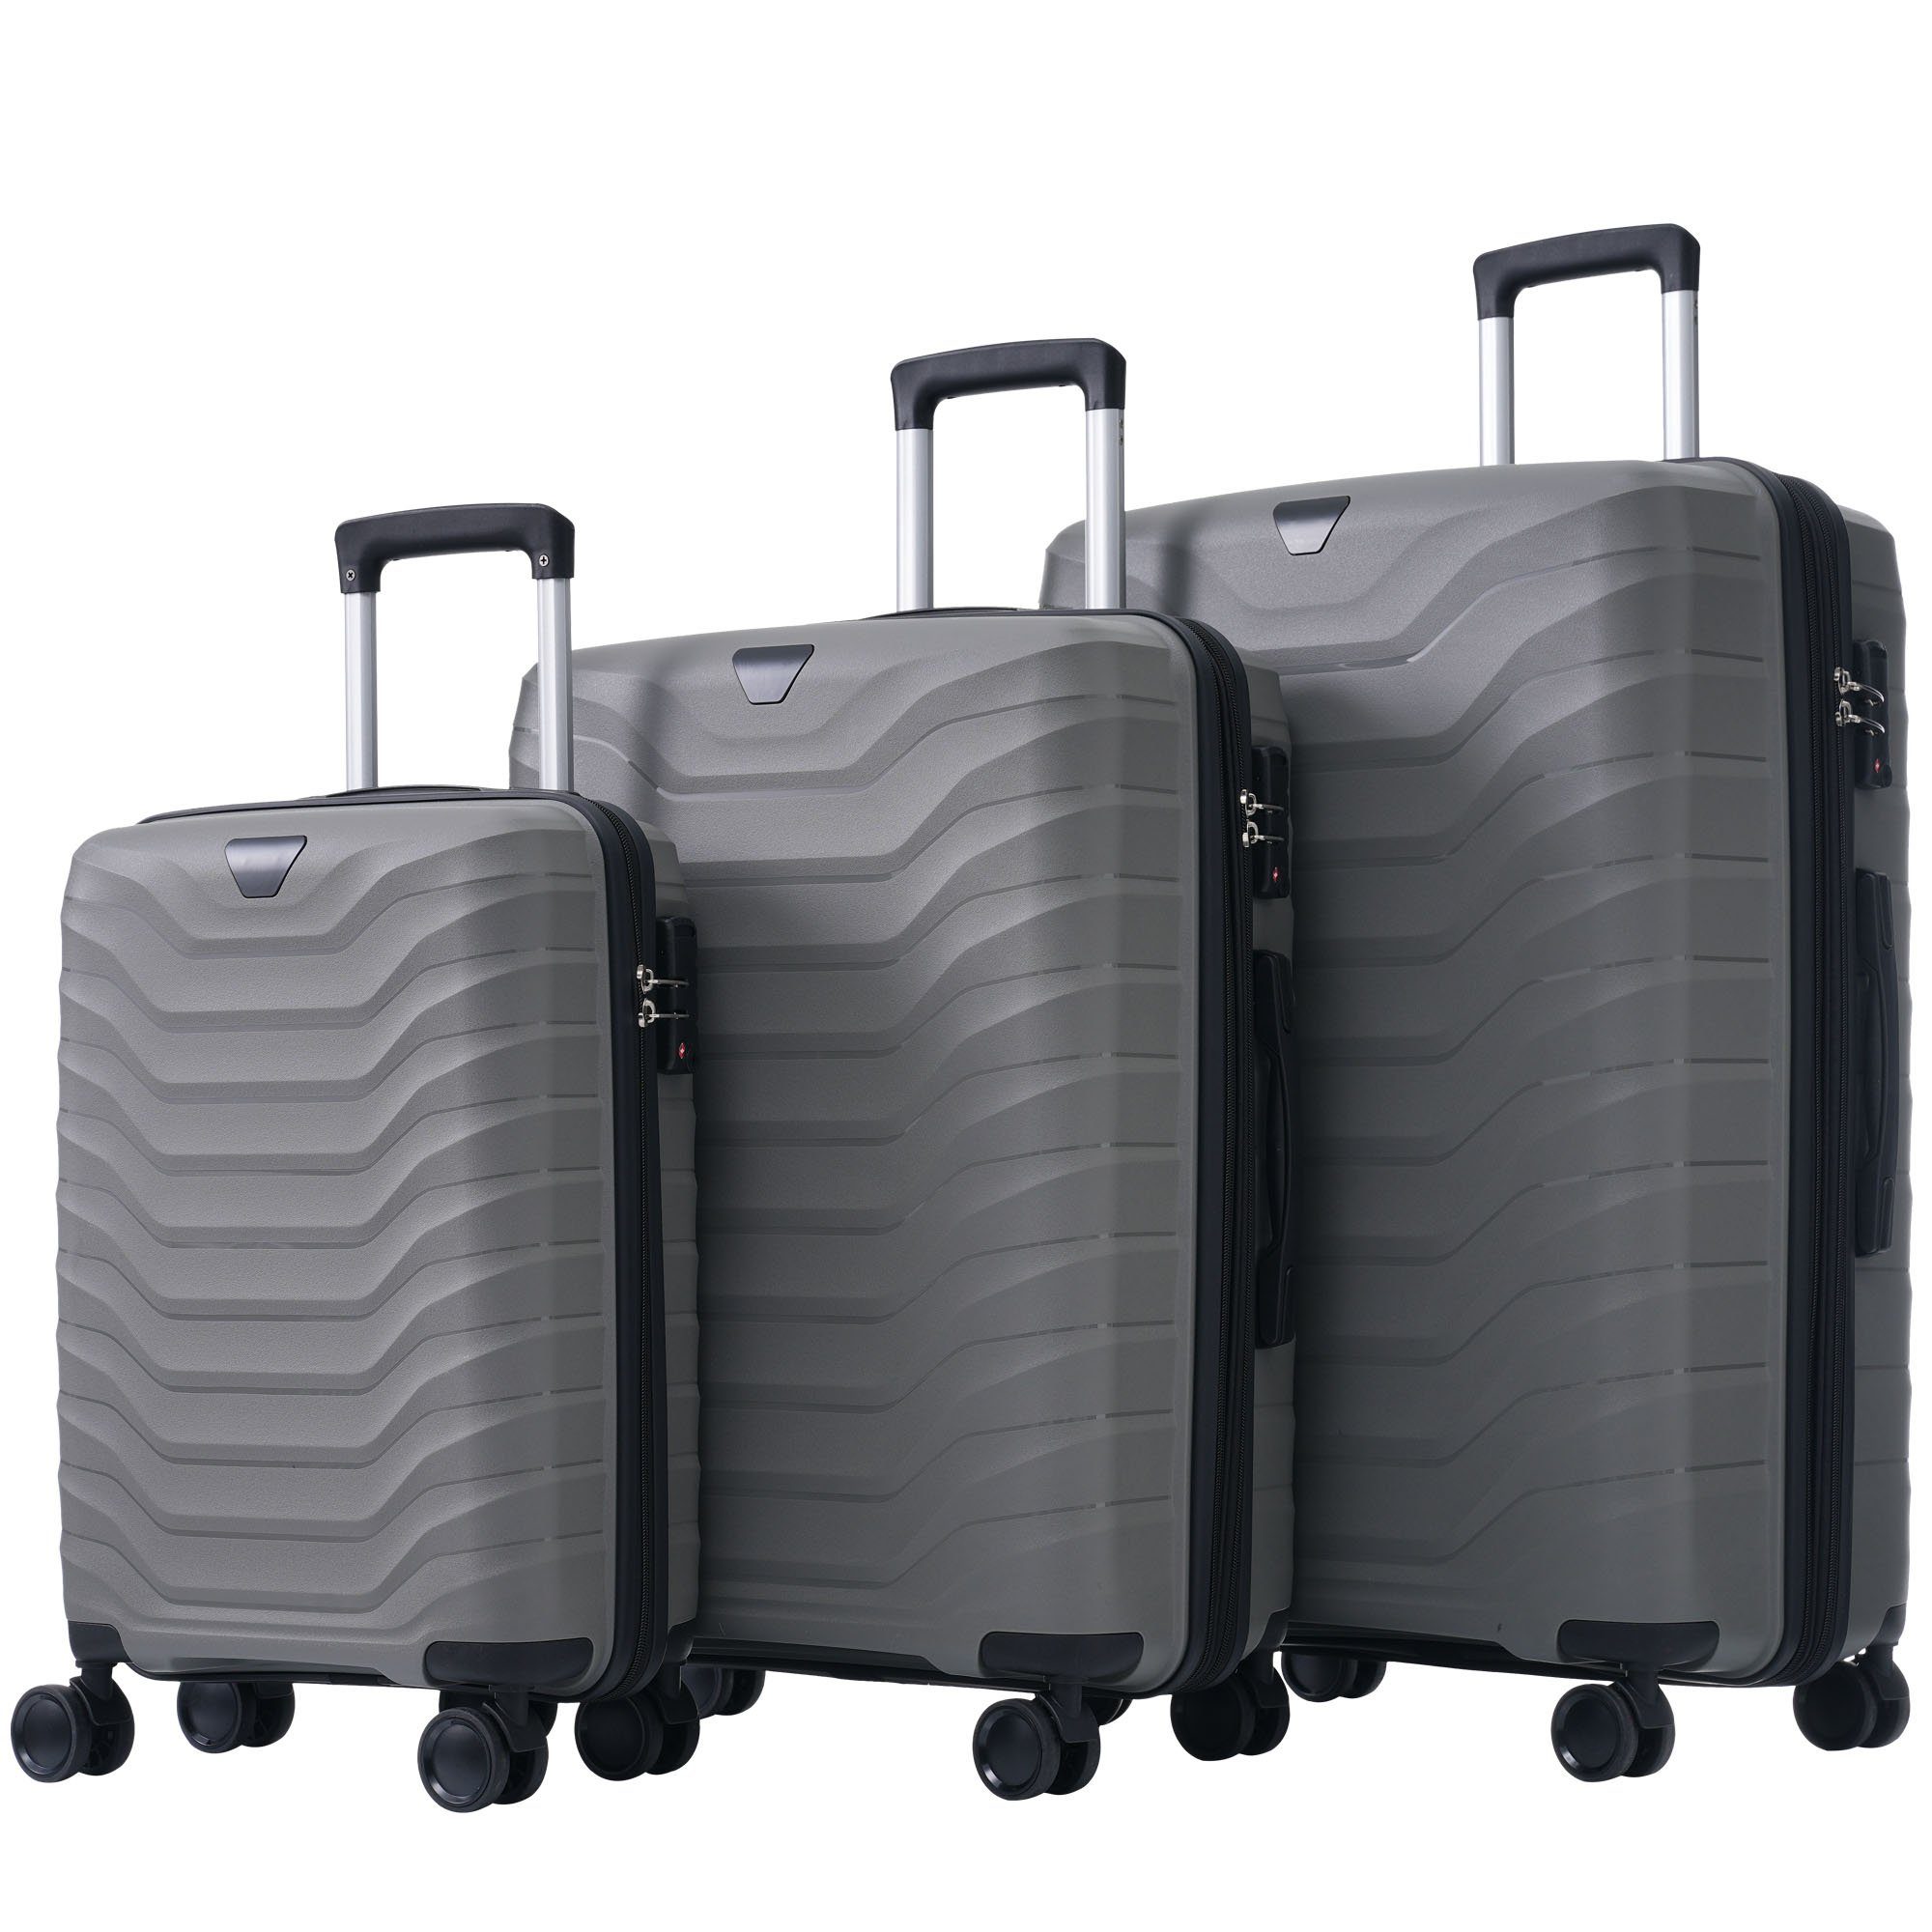 Gotagee Koffer Innenfächer Koffer 3-teiliger Koffer PP-Materialkoffer TSA-Schlössern